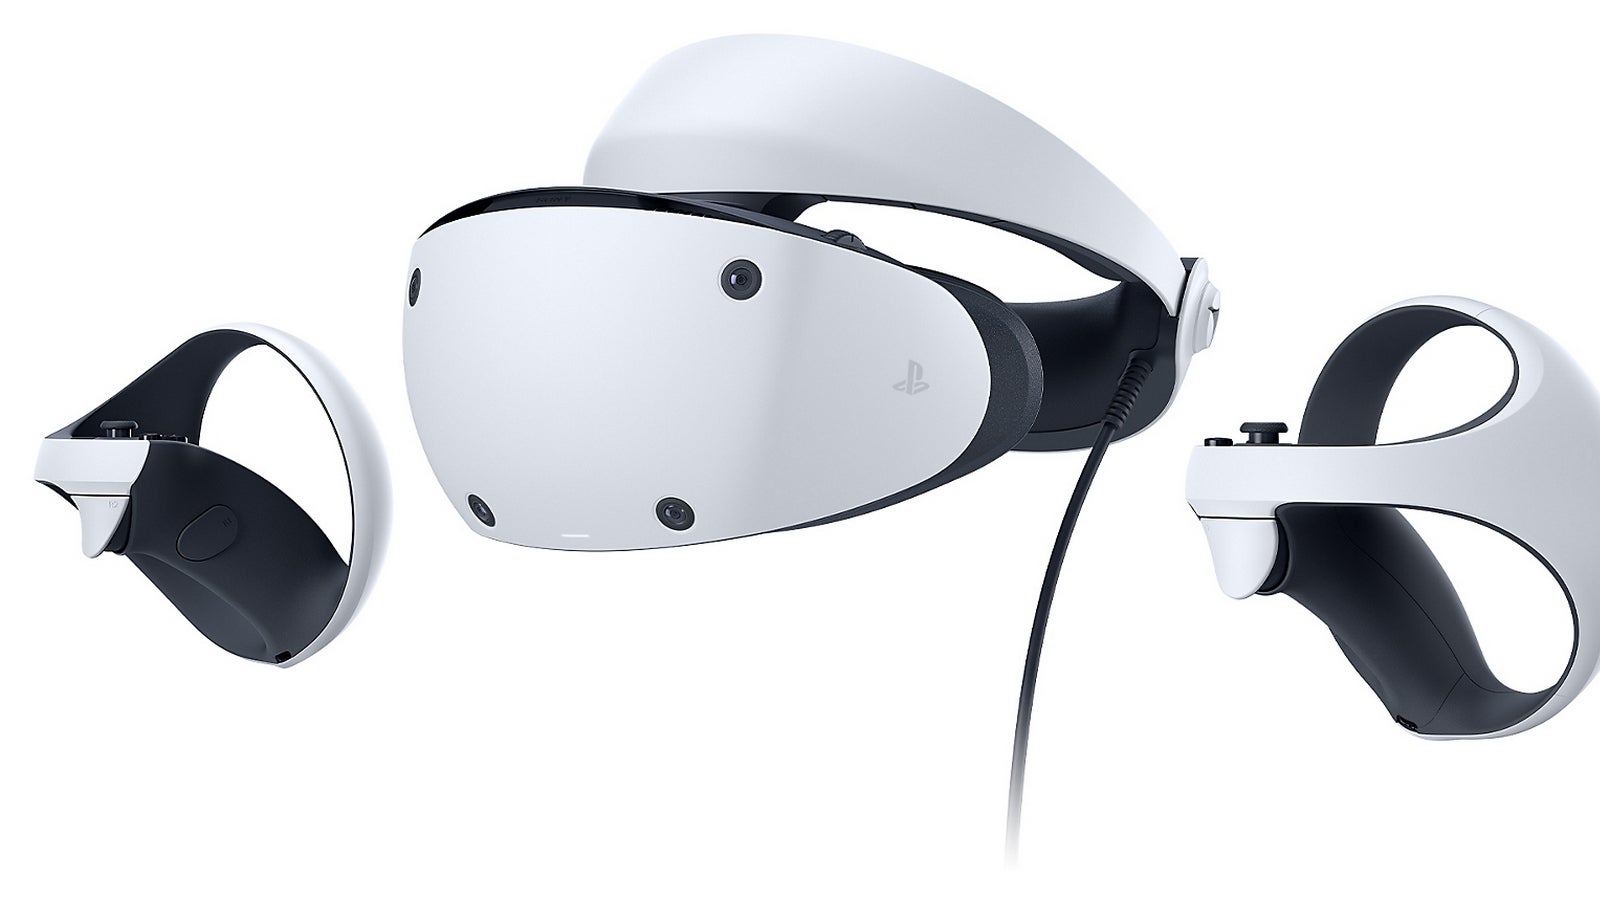 Bilder zu PlayStation VR2 vorbestellen - Bundles, Preis und Release-Datum